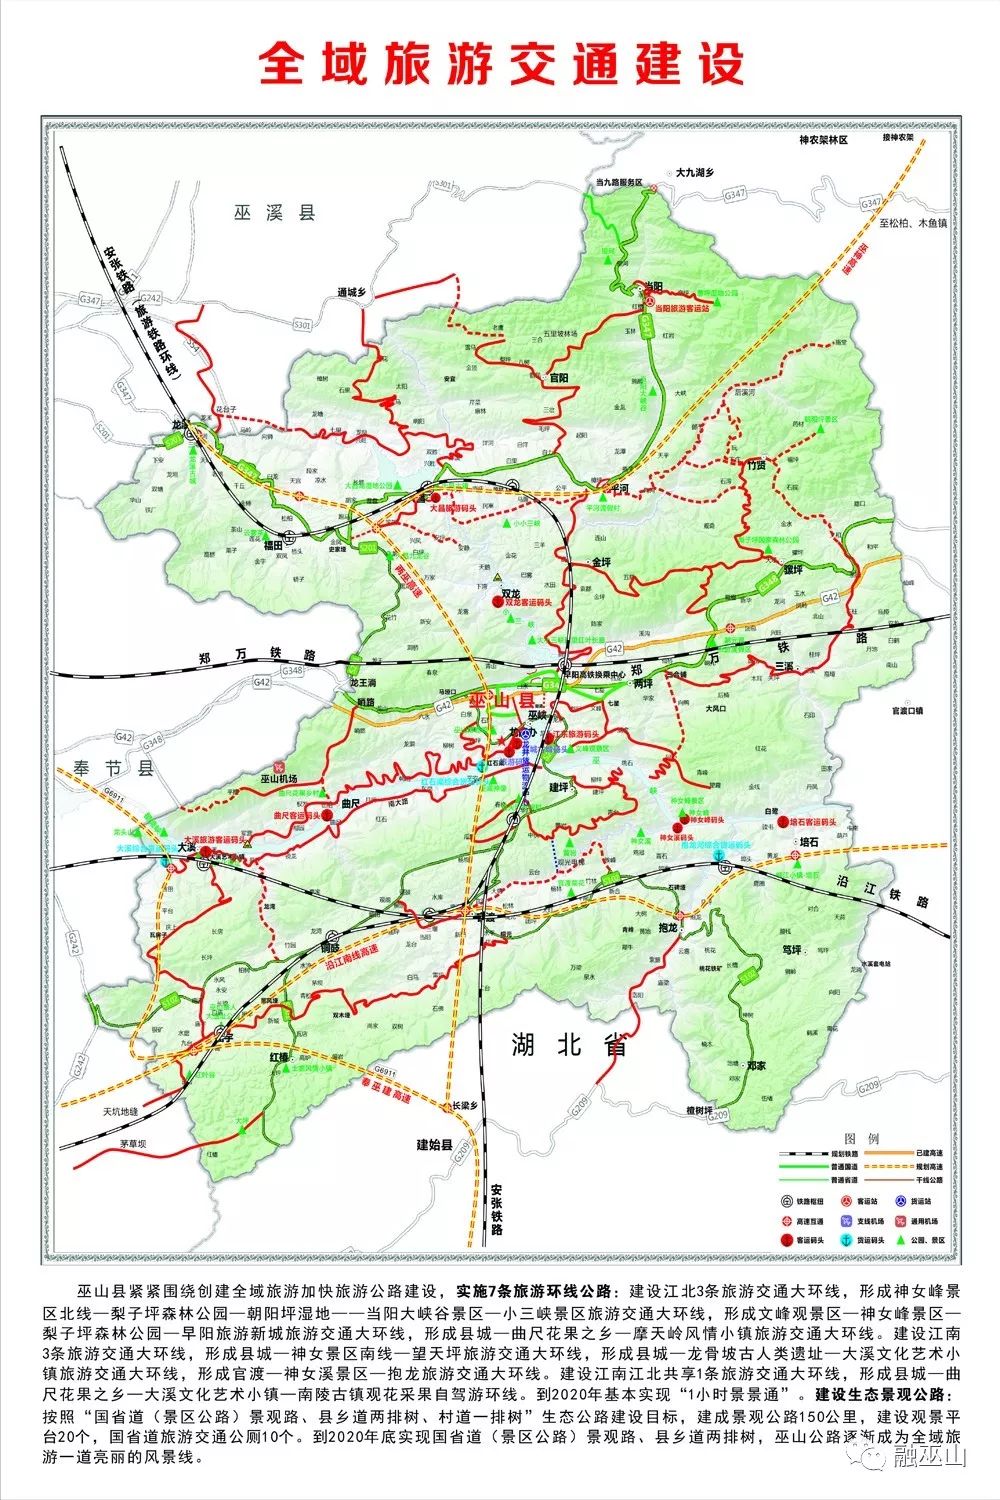 未来3年巫山将投放200亿元全力发展交通建设,全县交通环境迎来翻天覆